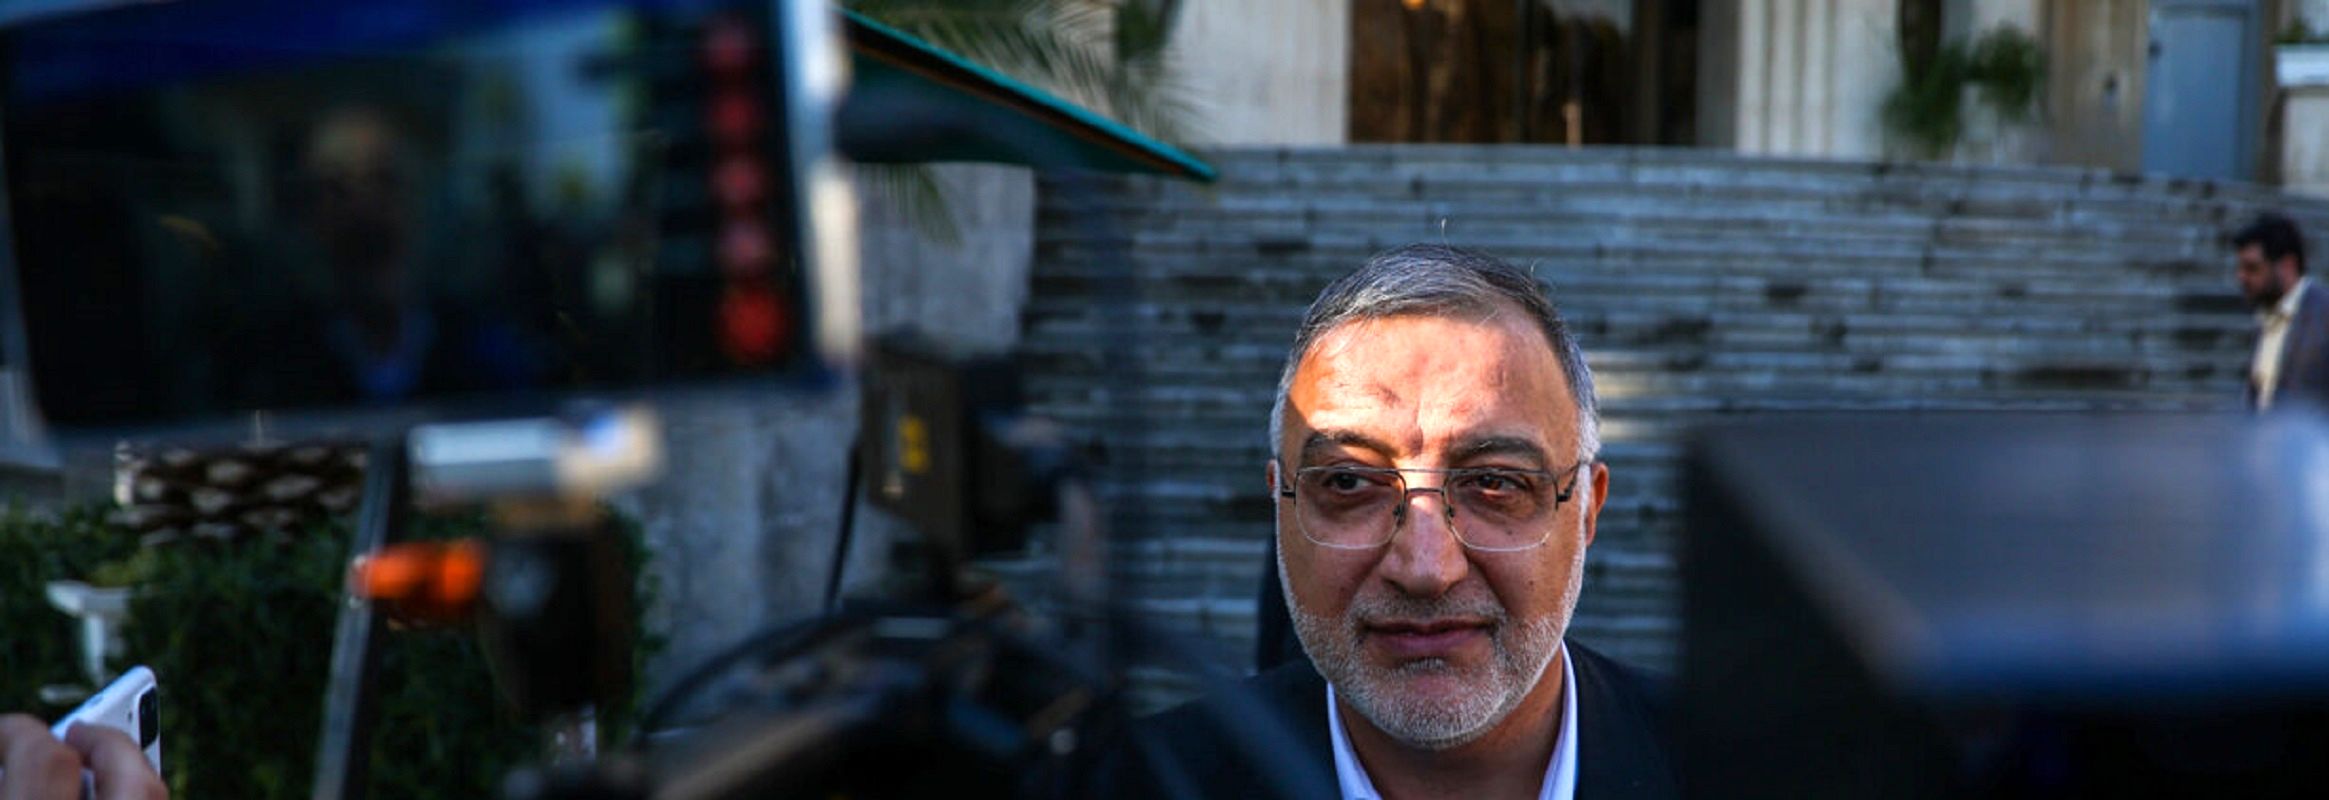 شهردار تهران در شهرکرد از کلید روحانی گفت / این کلید از ارباب و کدخدایش ودیعه گرفته شده بود! + فیلم